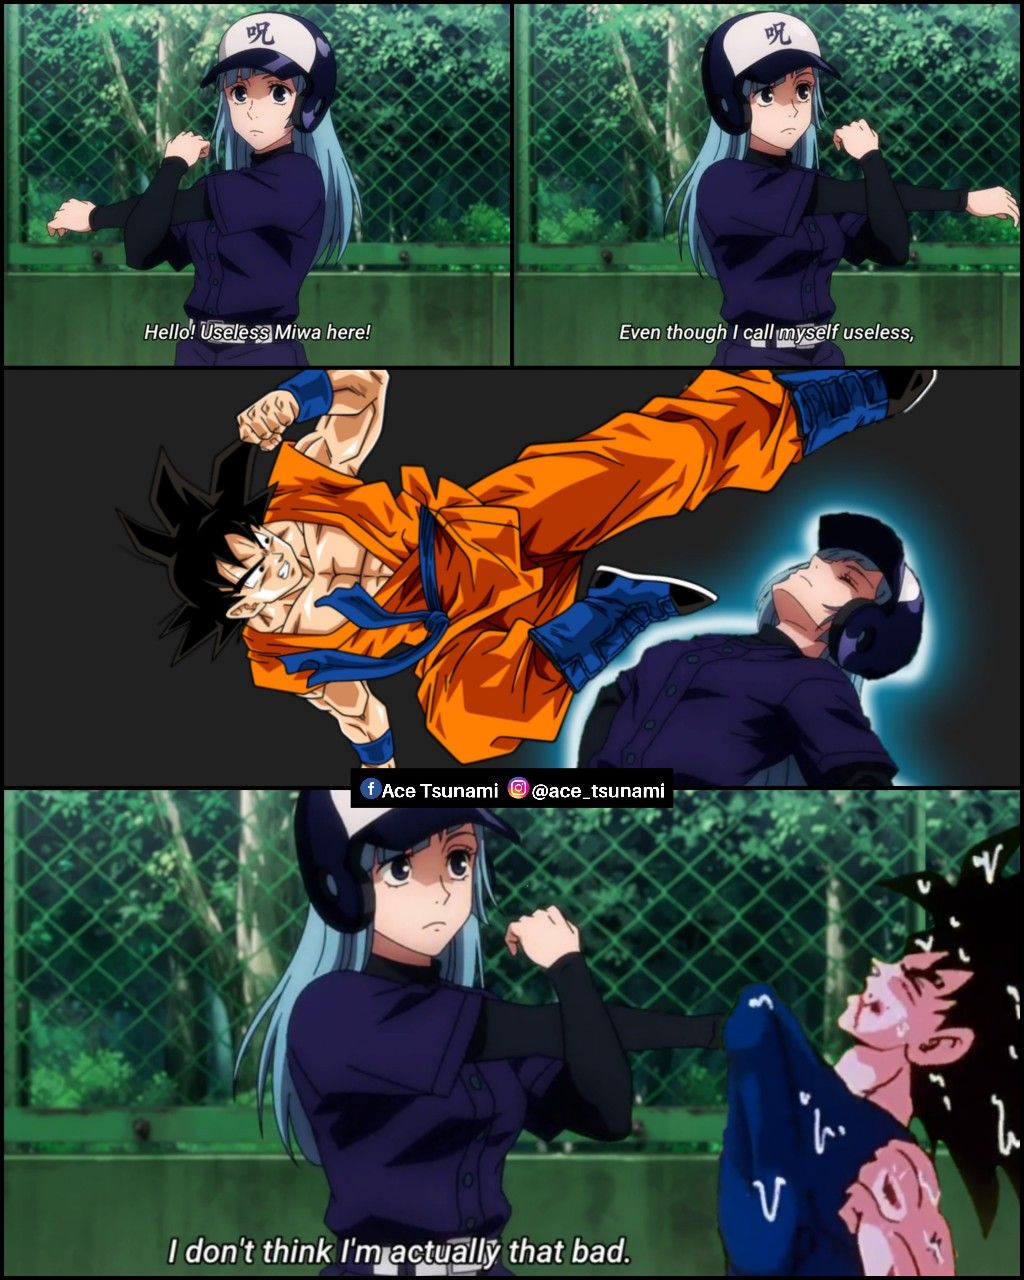 Just a joke, calm down you Goku fans.... Calm down.